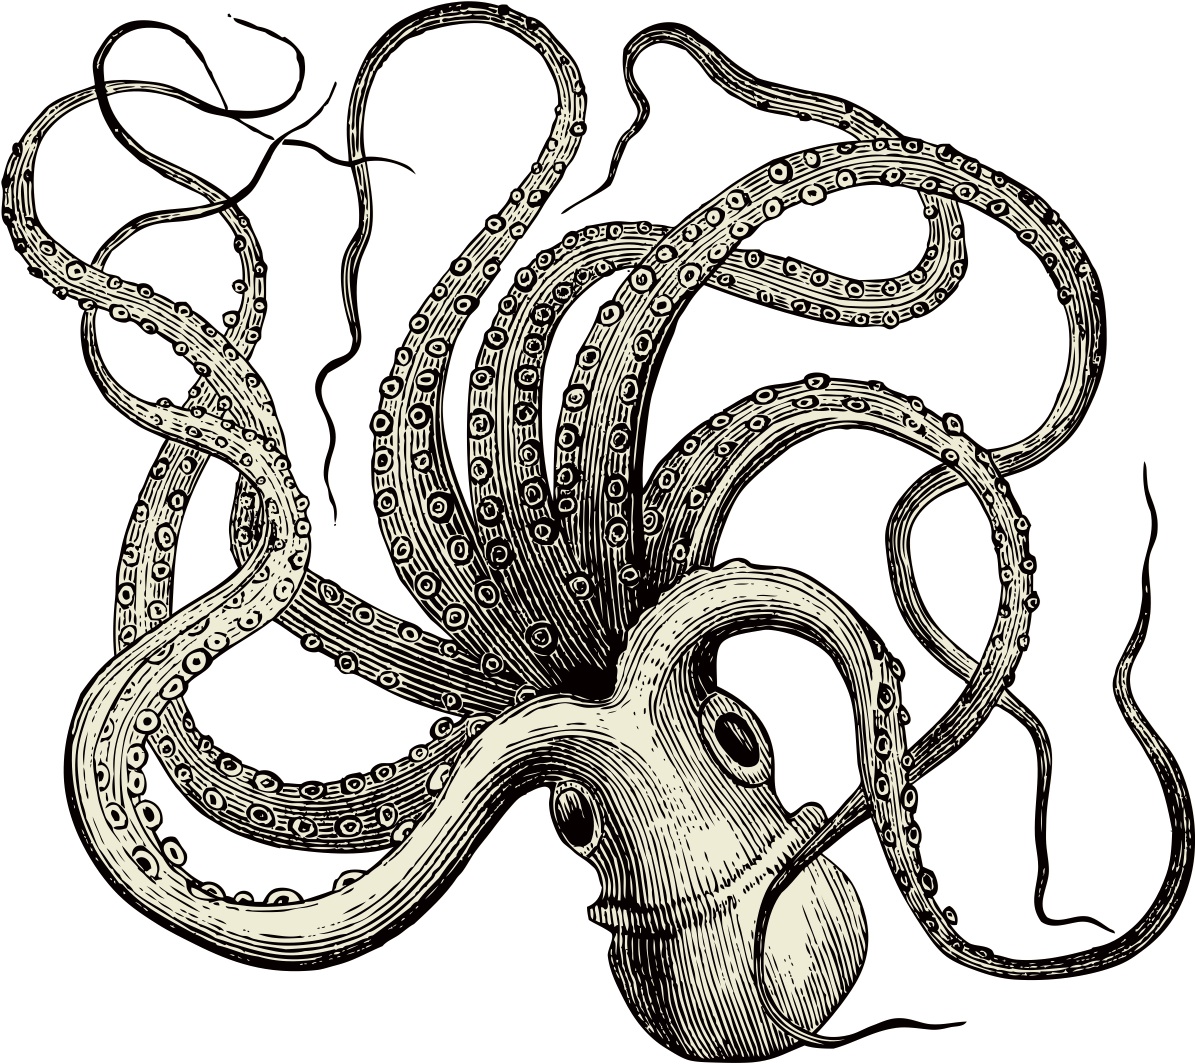 octopus vulgaris via Shutterstock